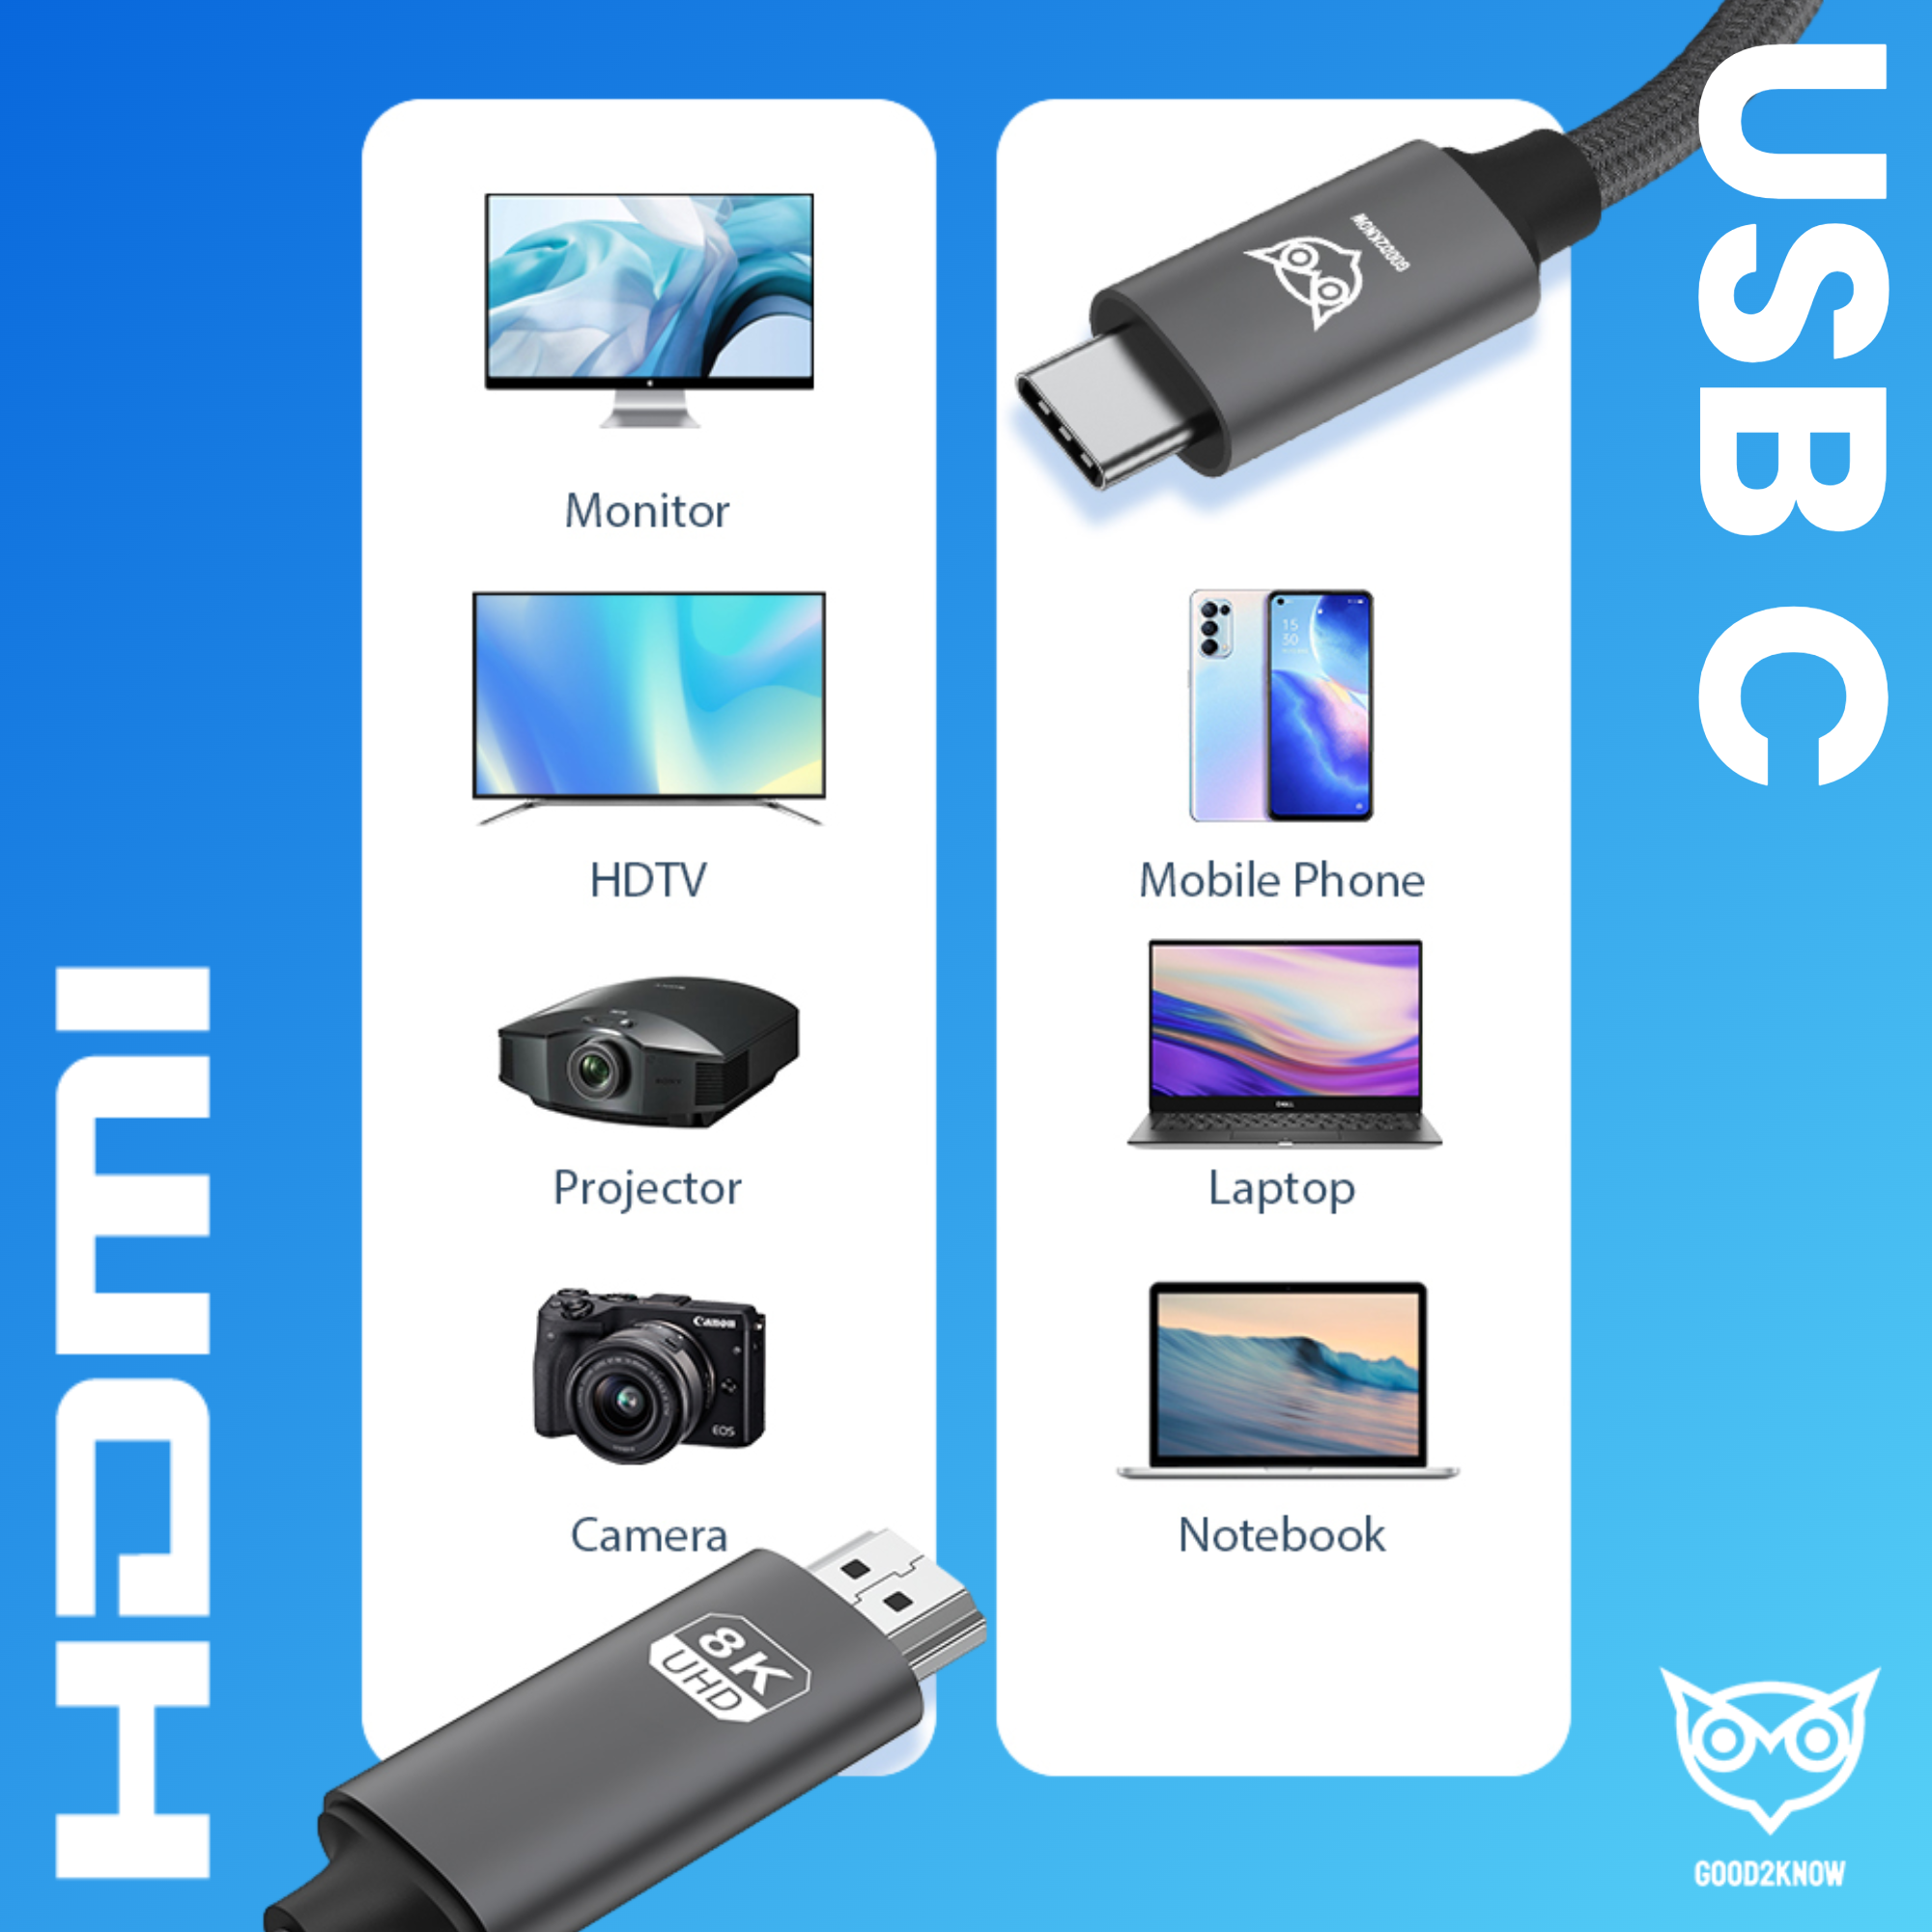 Good2know Usb c naar HDMI - 2 meter - Ultra 8k - 4k - 2k - Video kabel geschikt voor macbook pro, air - hdmi switch - usb c naar hdmi kabel